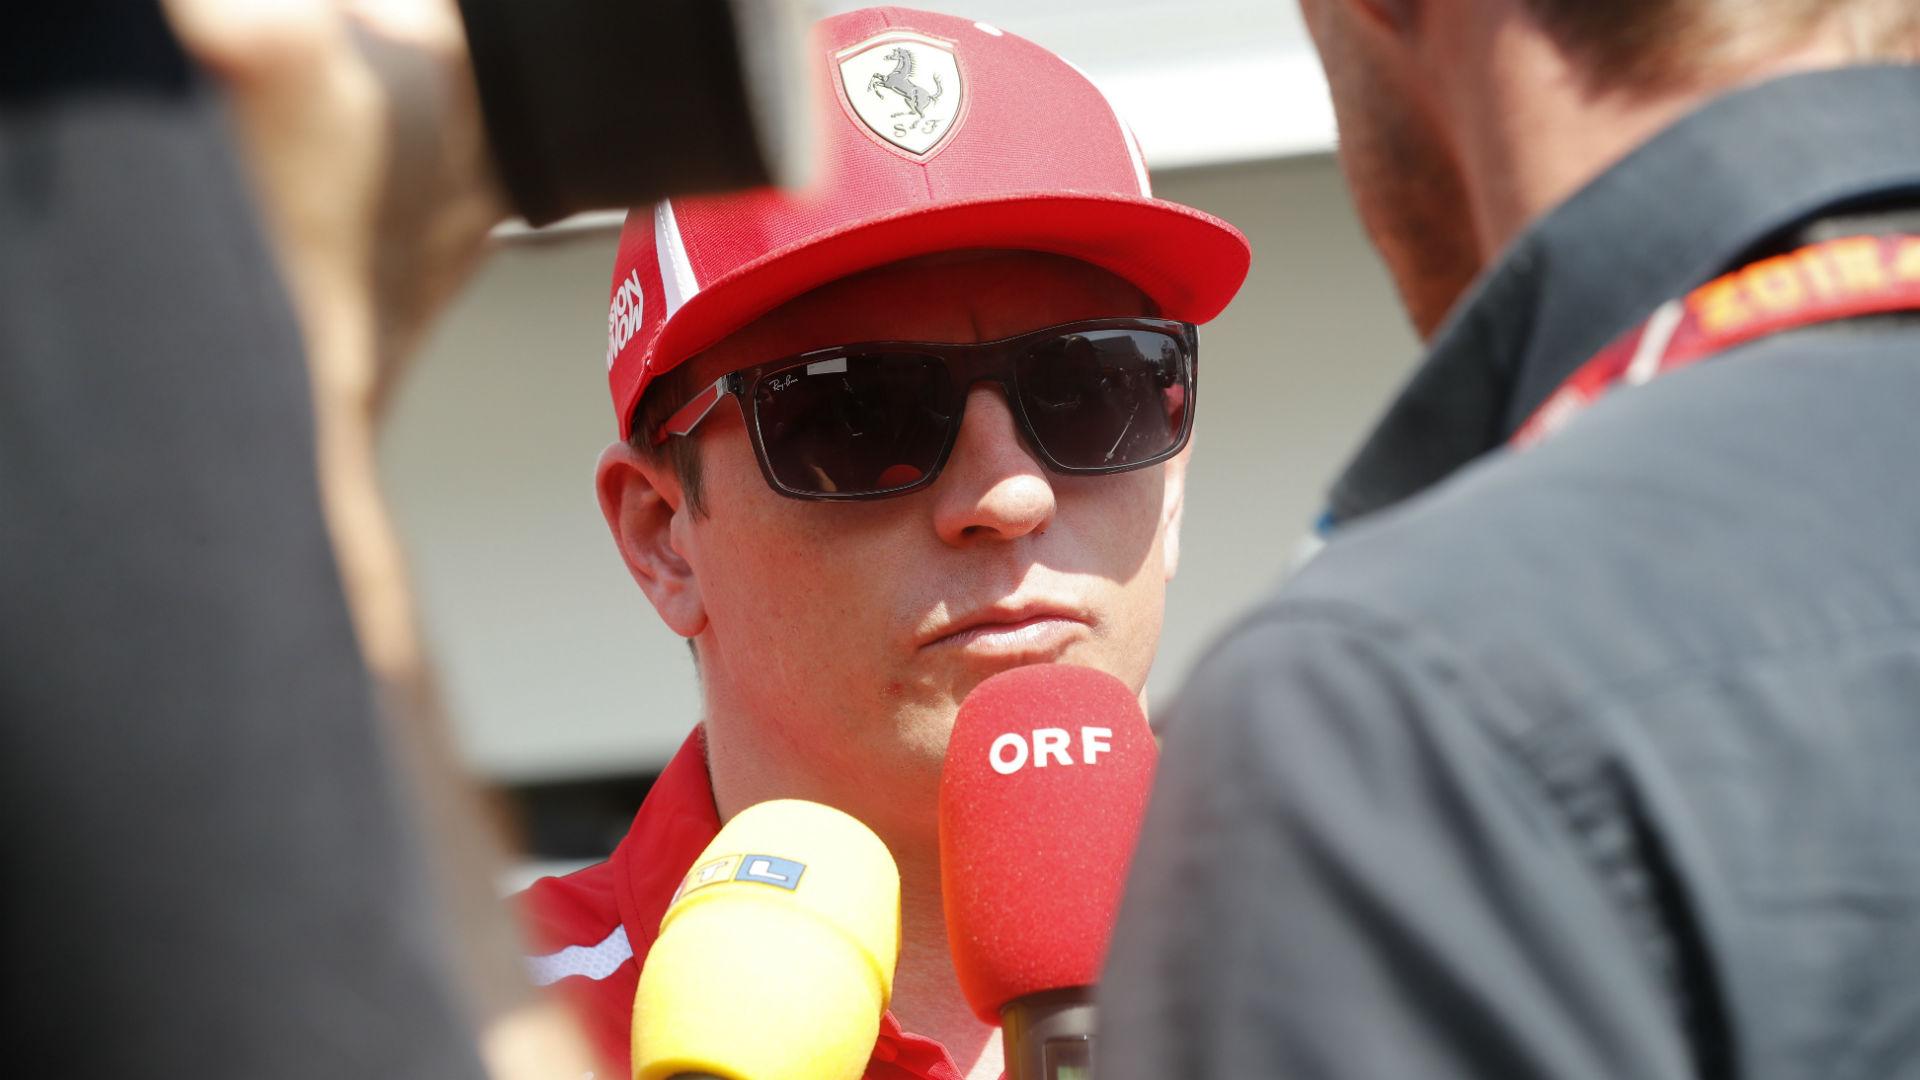 Formuła 1: Kimi Raikkonen nie żałuje odejścia z Ferrari. "Będę mógł spędzać więcej czasu z rodziną"